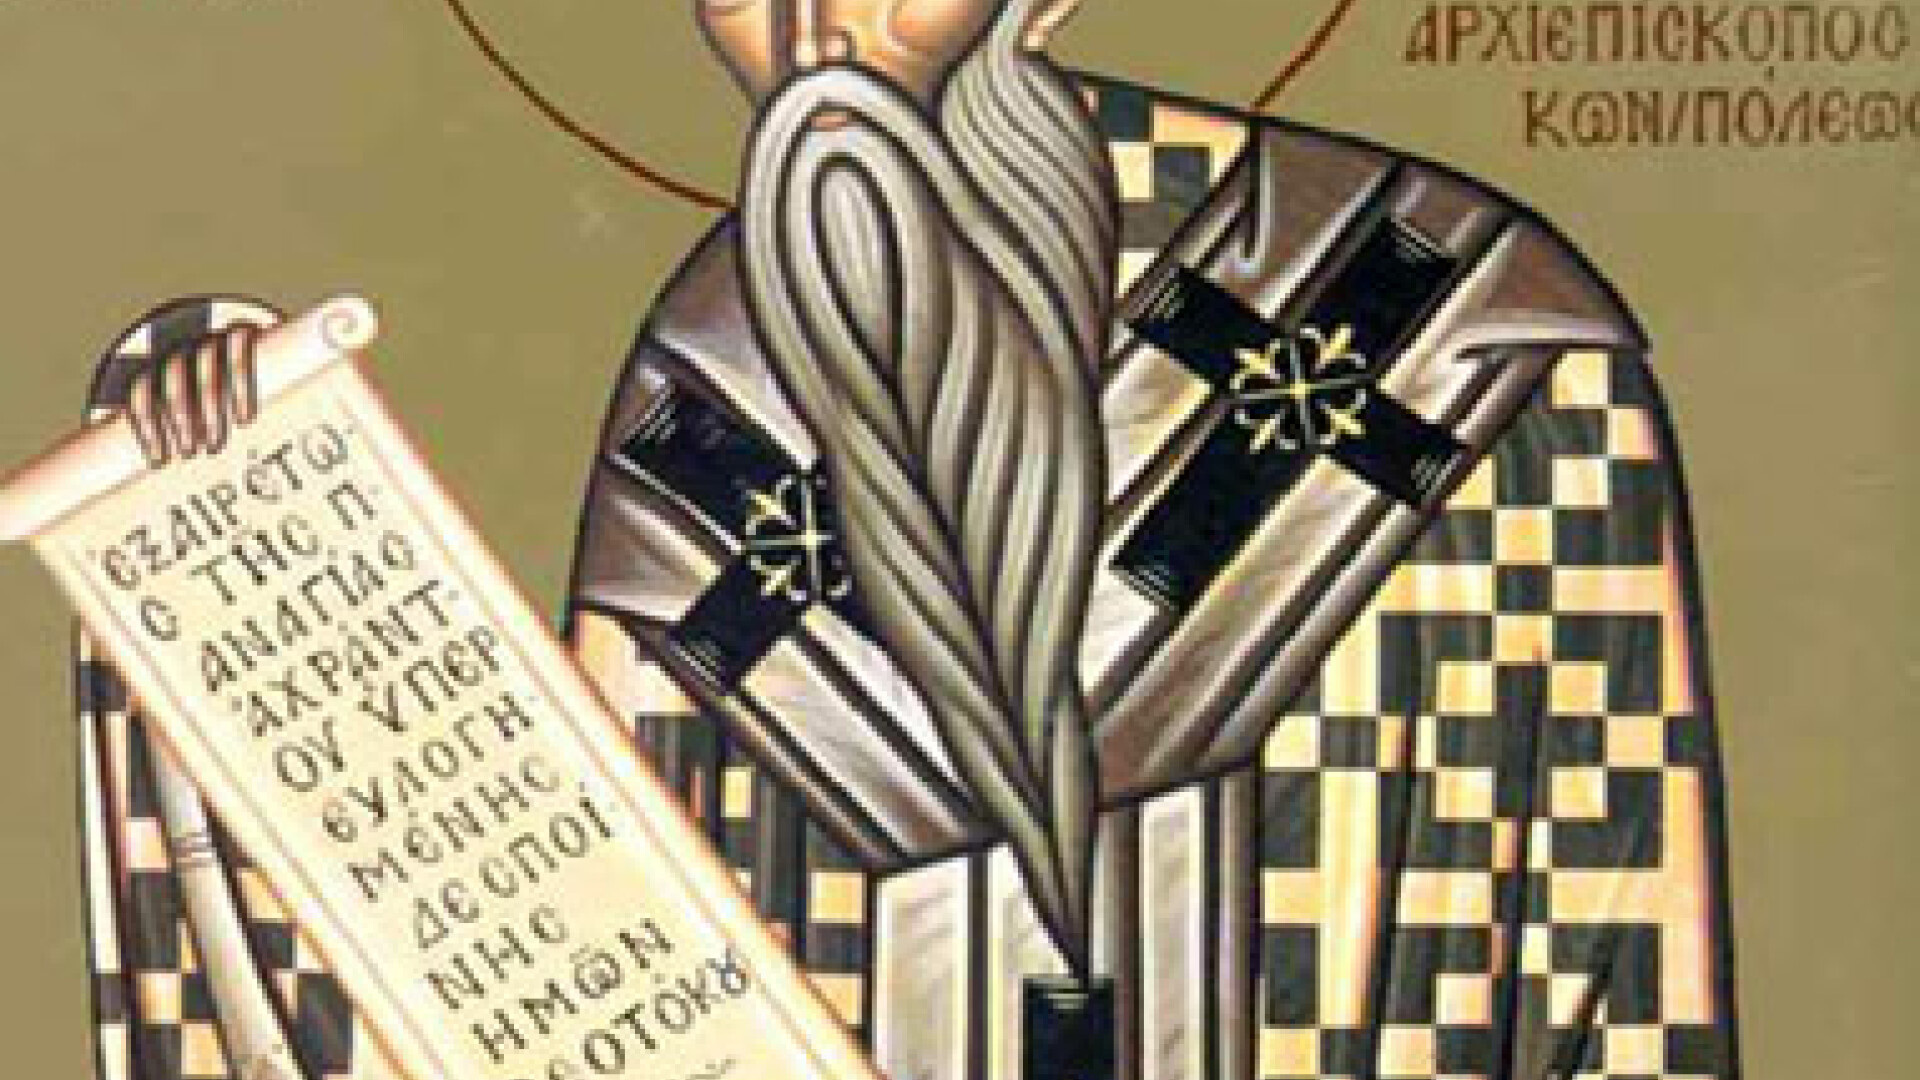 Sfântul Alexandru